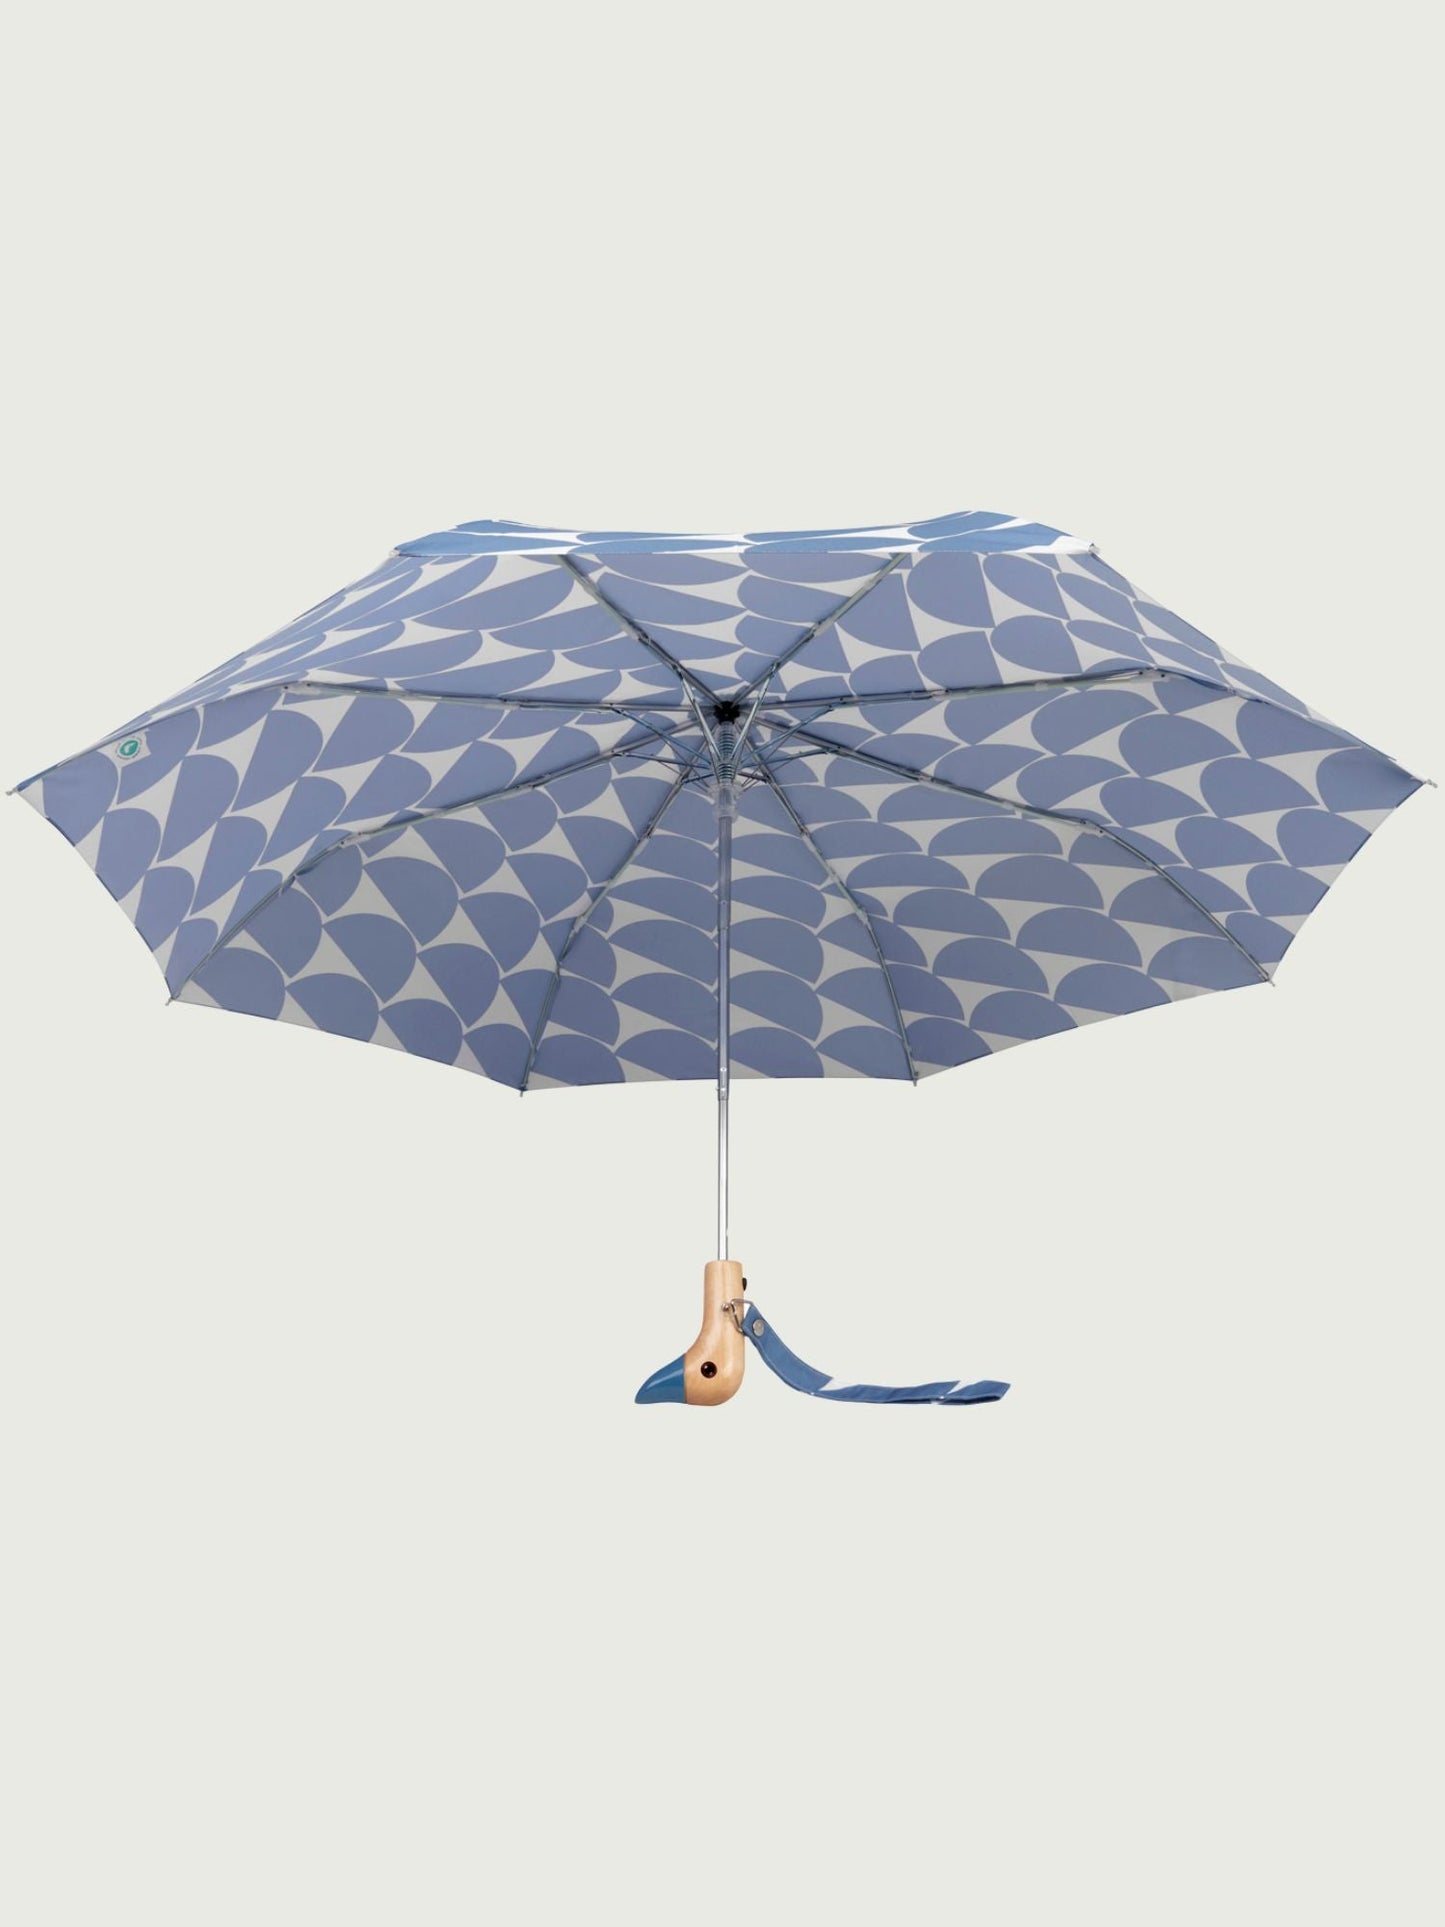 
                  
                    Denim Moon Compact Eco-Friendly Wind Resistant Umbrella
                  
                